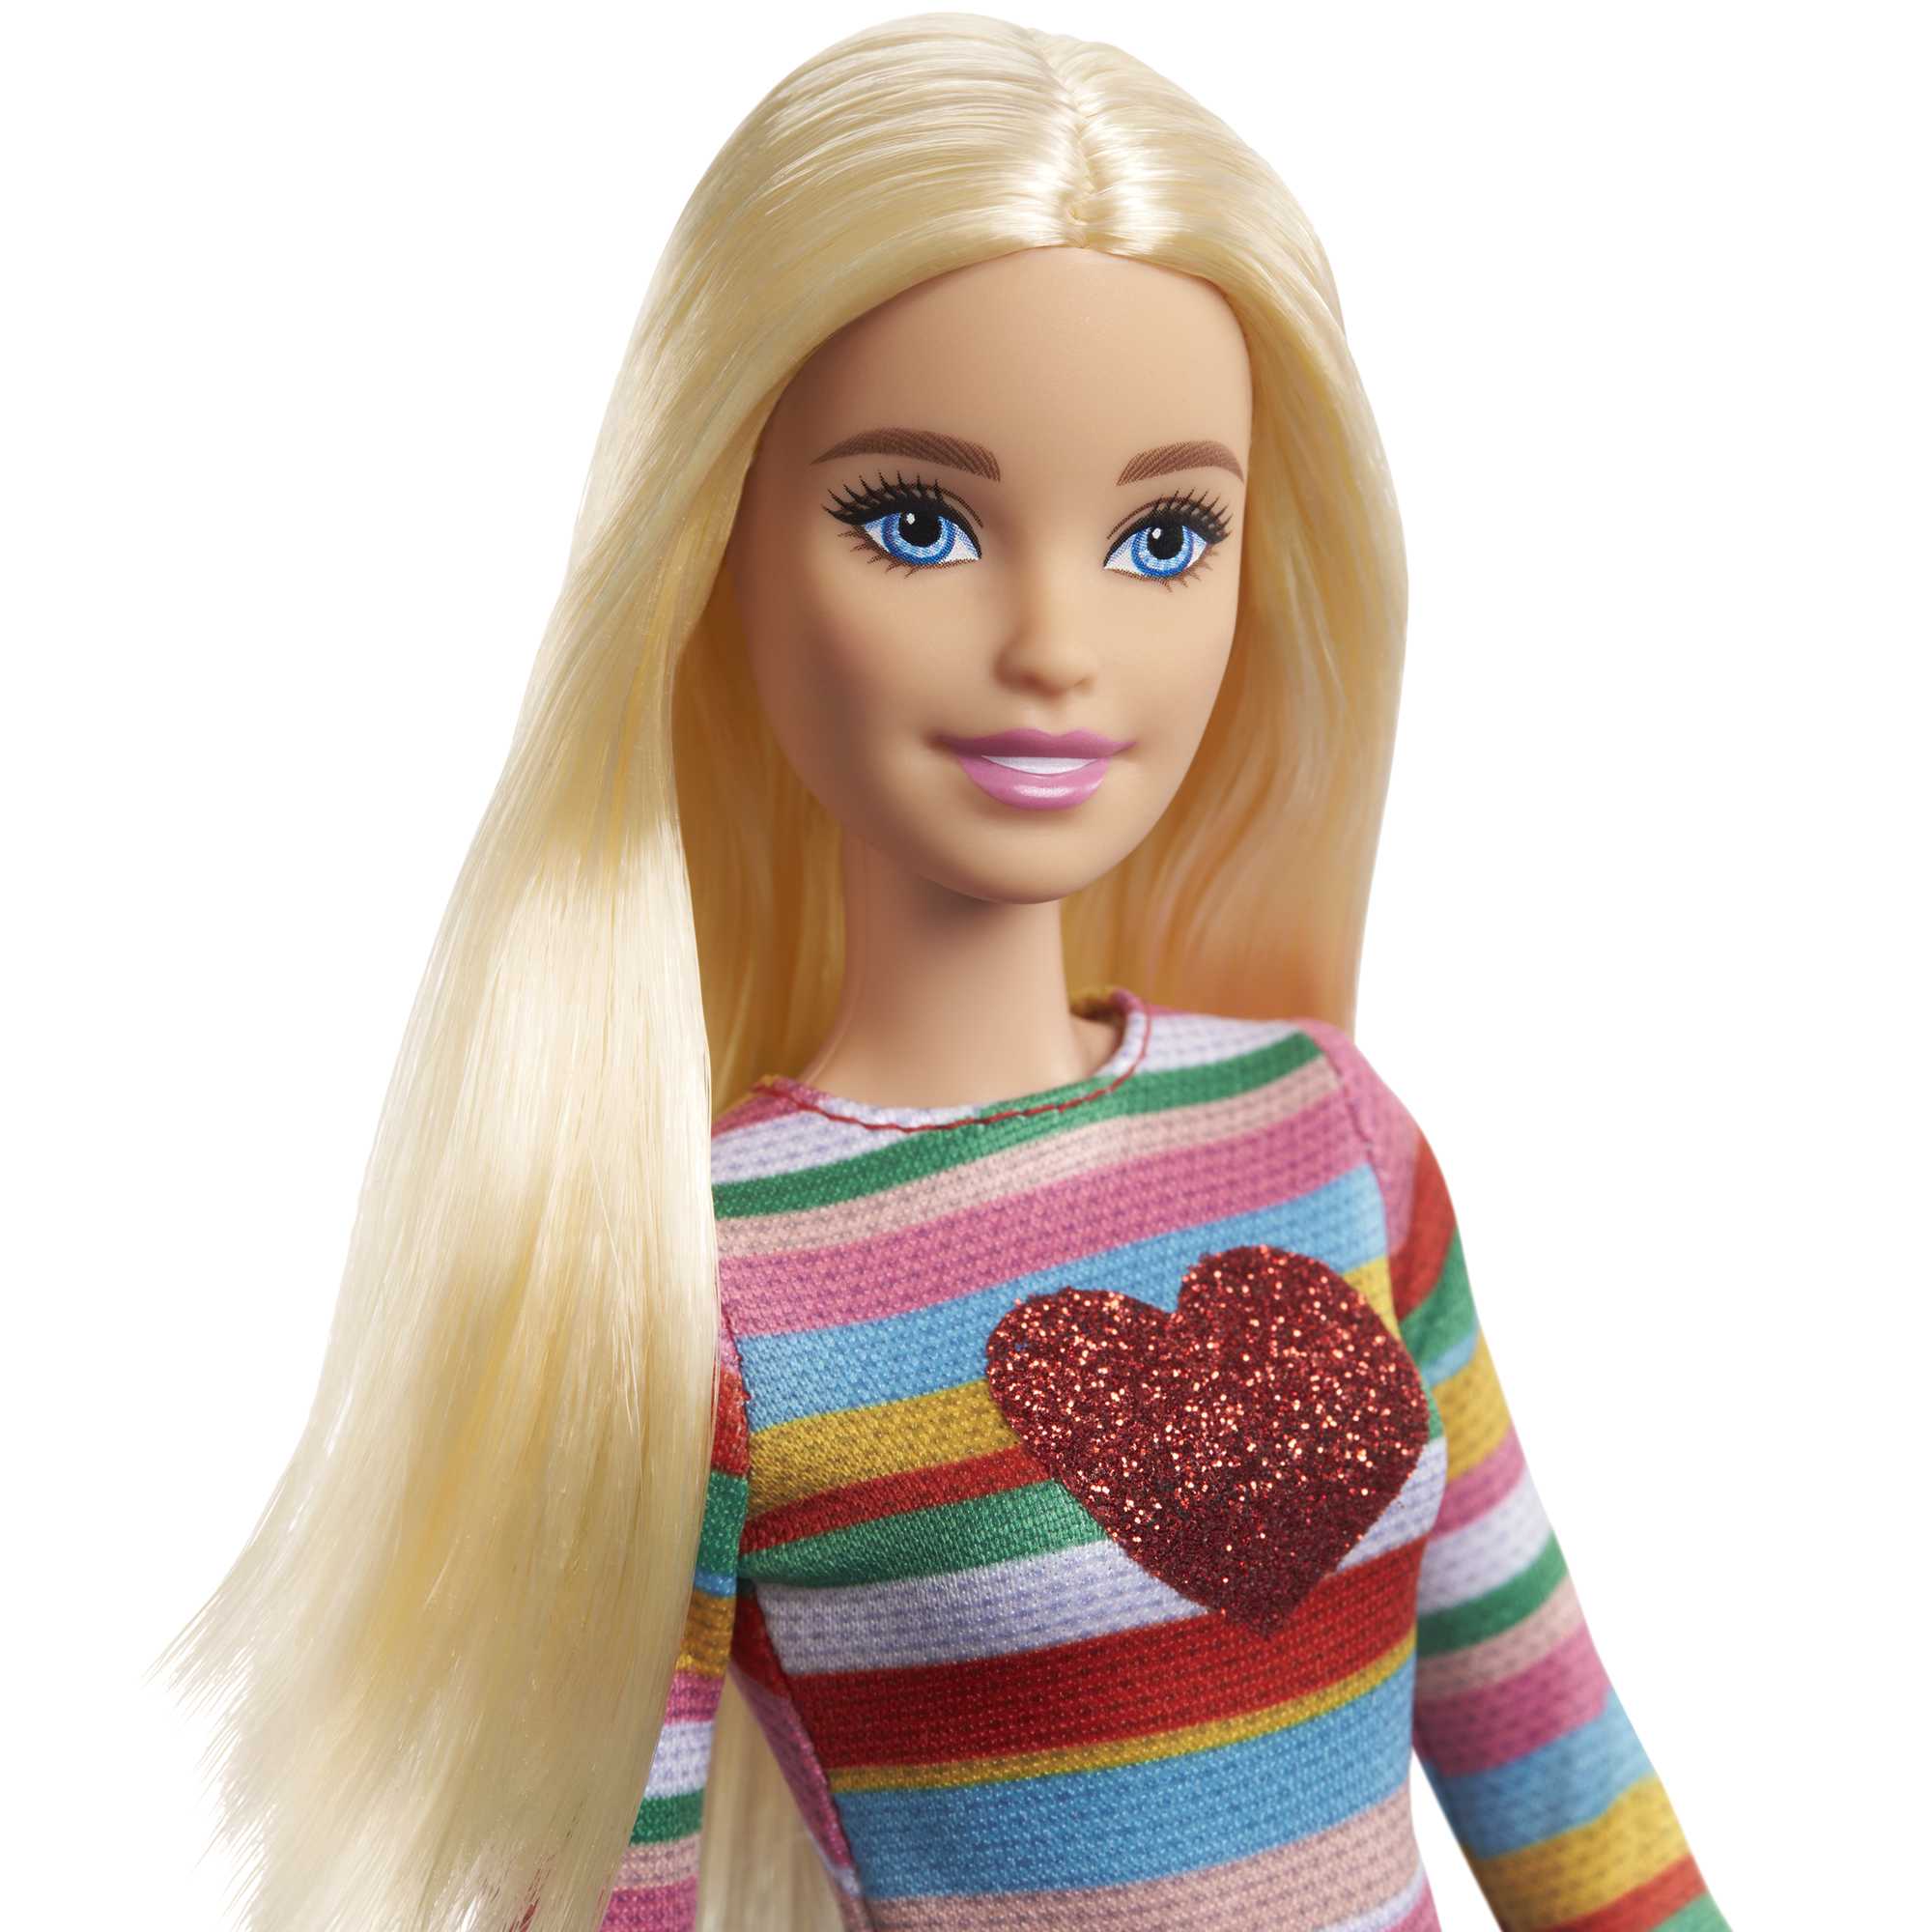 Barbie It Takes Two Barbie “Malibu” Roberts Doll | | MATTEL